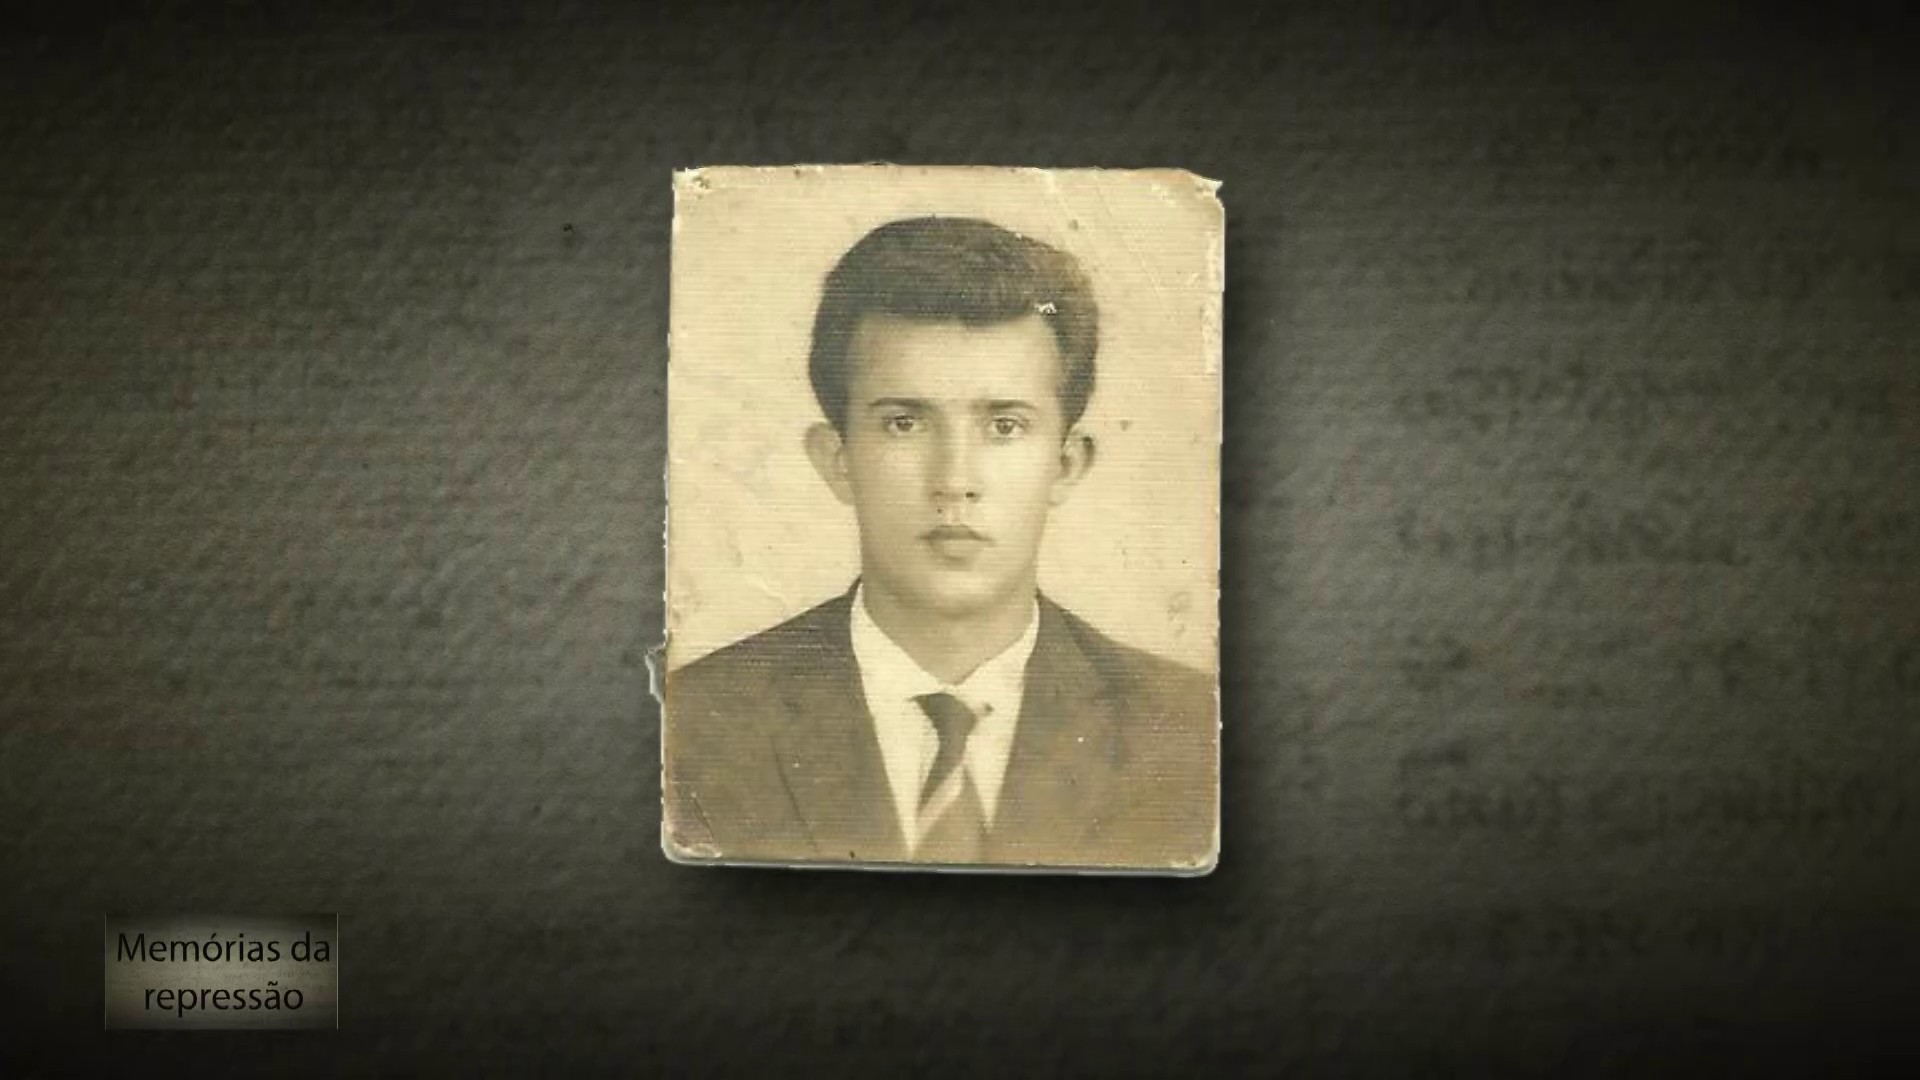 Memórias da Repressão: vítima da ditadura militar, líder estudantil foi preso, torturado e achado morto de forma ‘nebulosa’